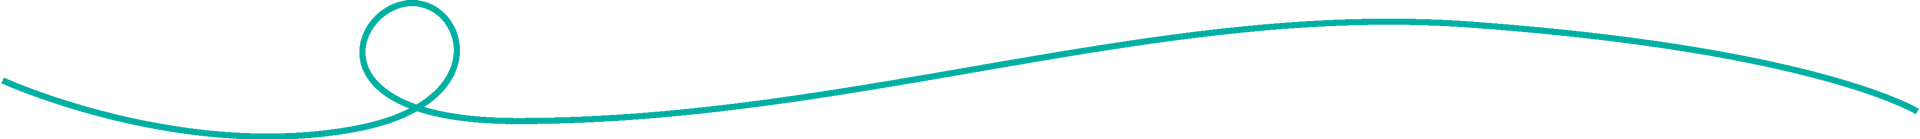 Green line divider